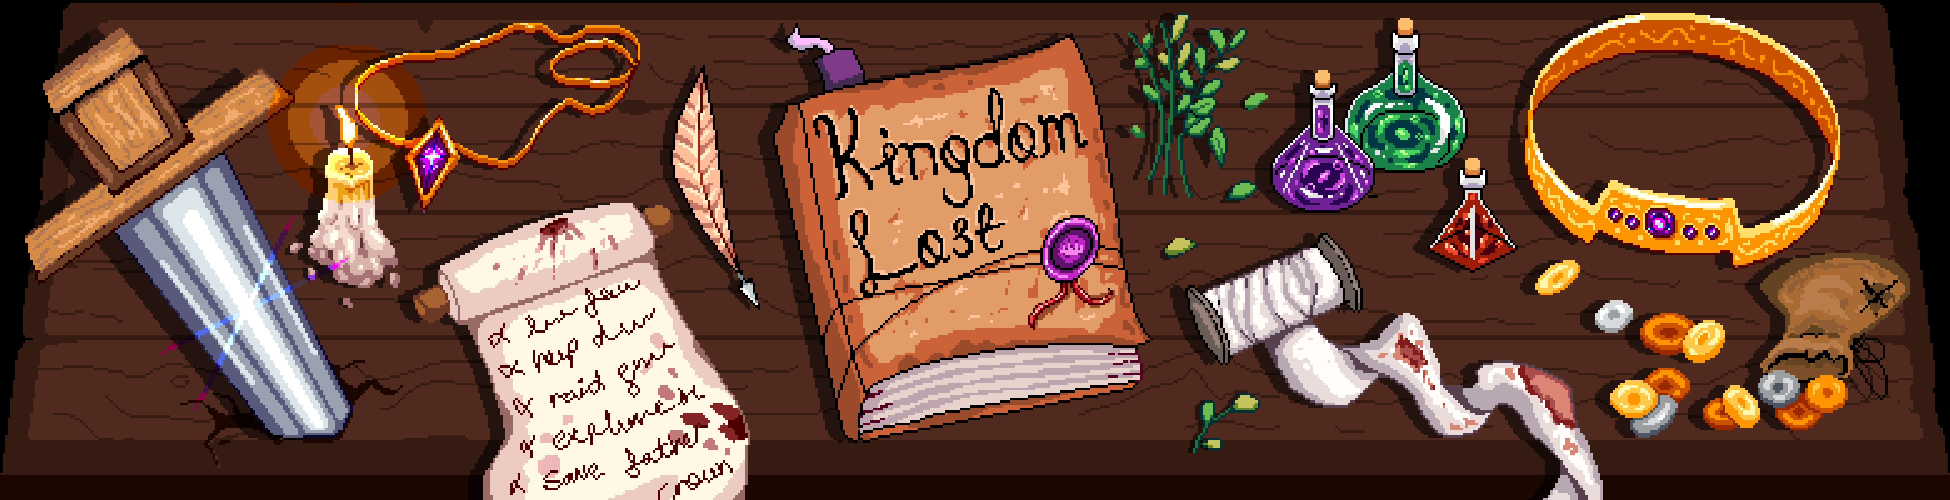 Kingdom Lost